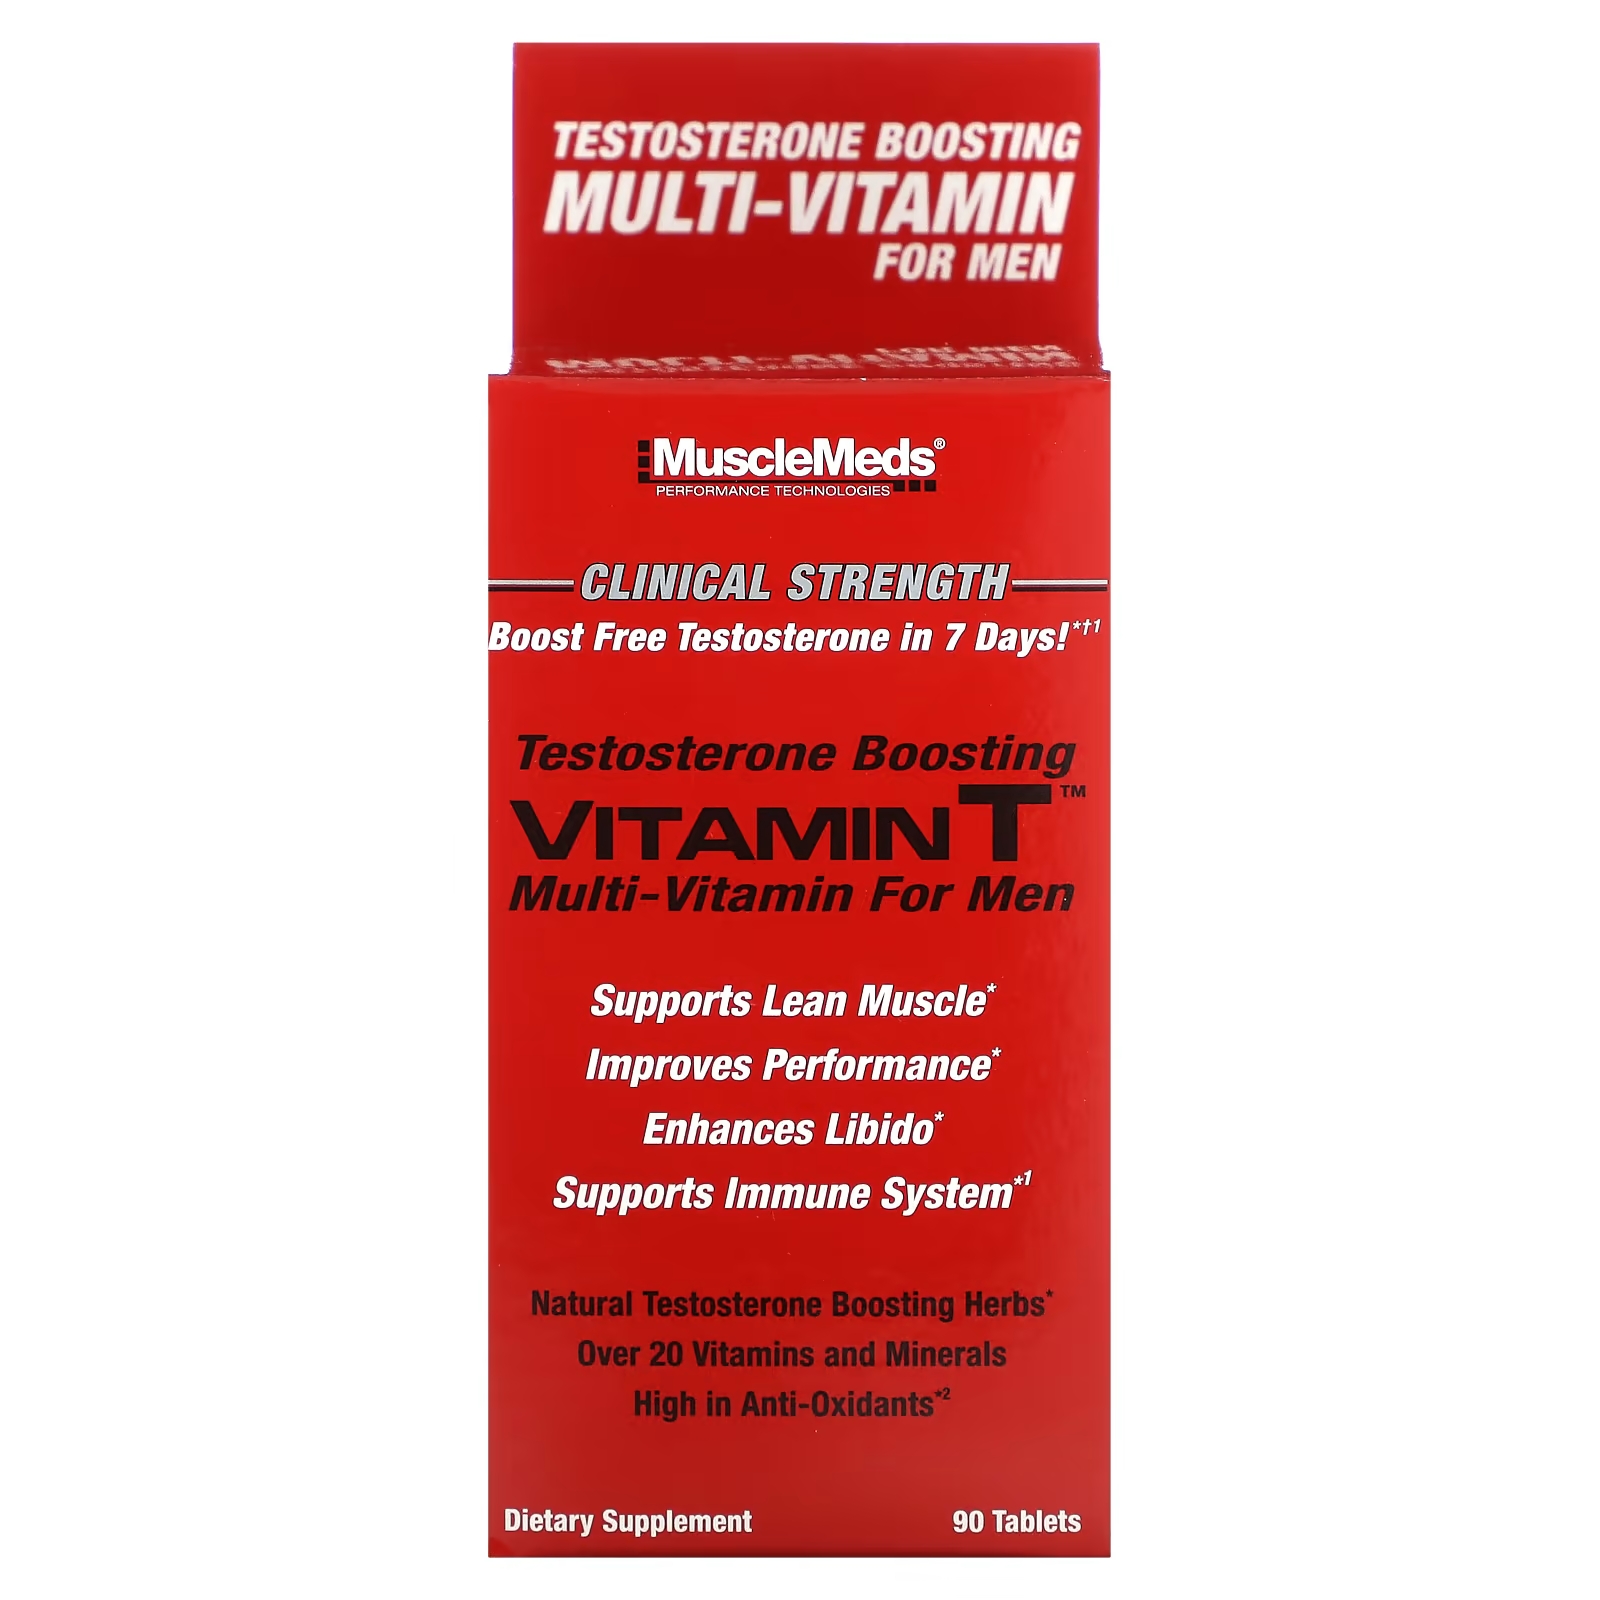 Мультивитамин для повышения тестостерона с витамином Т MuscleMeds, 90 таблеток витамины антиоксиданты минералы nutraway цла